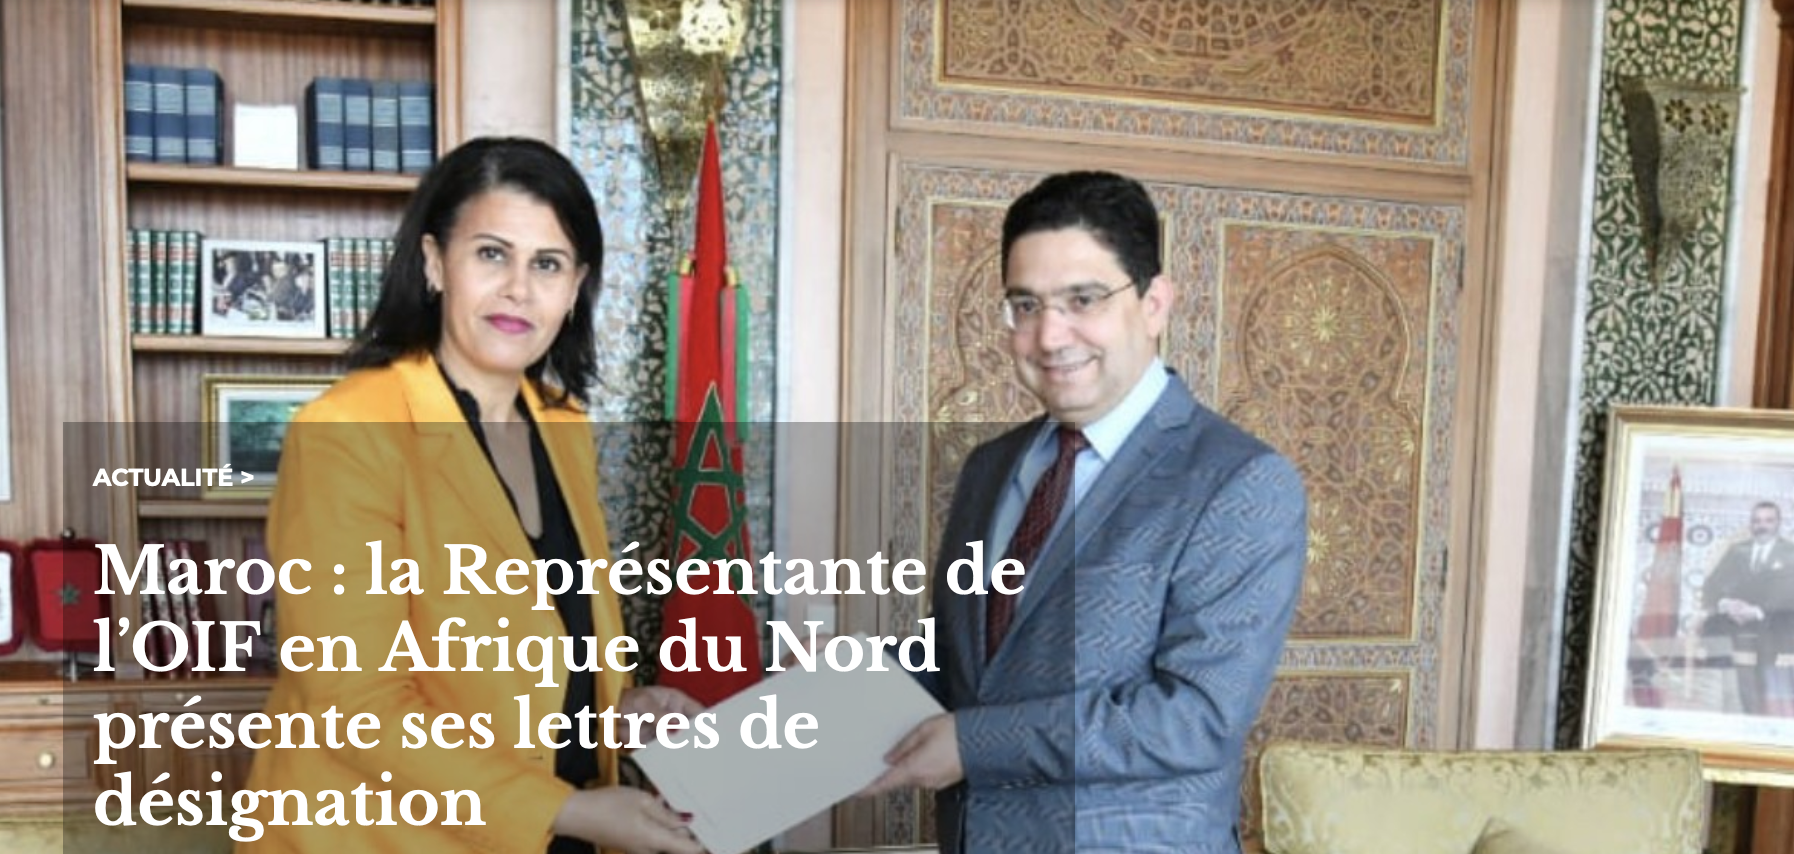 La Représentante de l’OIF en Afrique du Nord a présenté officiellement ses lettres de désignation au Ministre des Affaires étrangères, de la Coopération africaine et des Marocains résidant à l’étranger